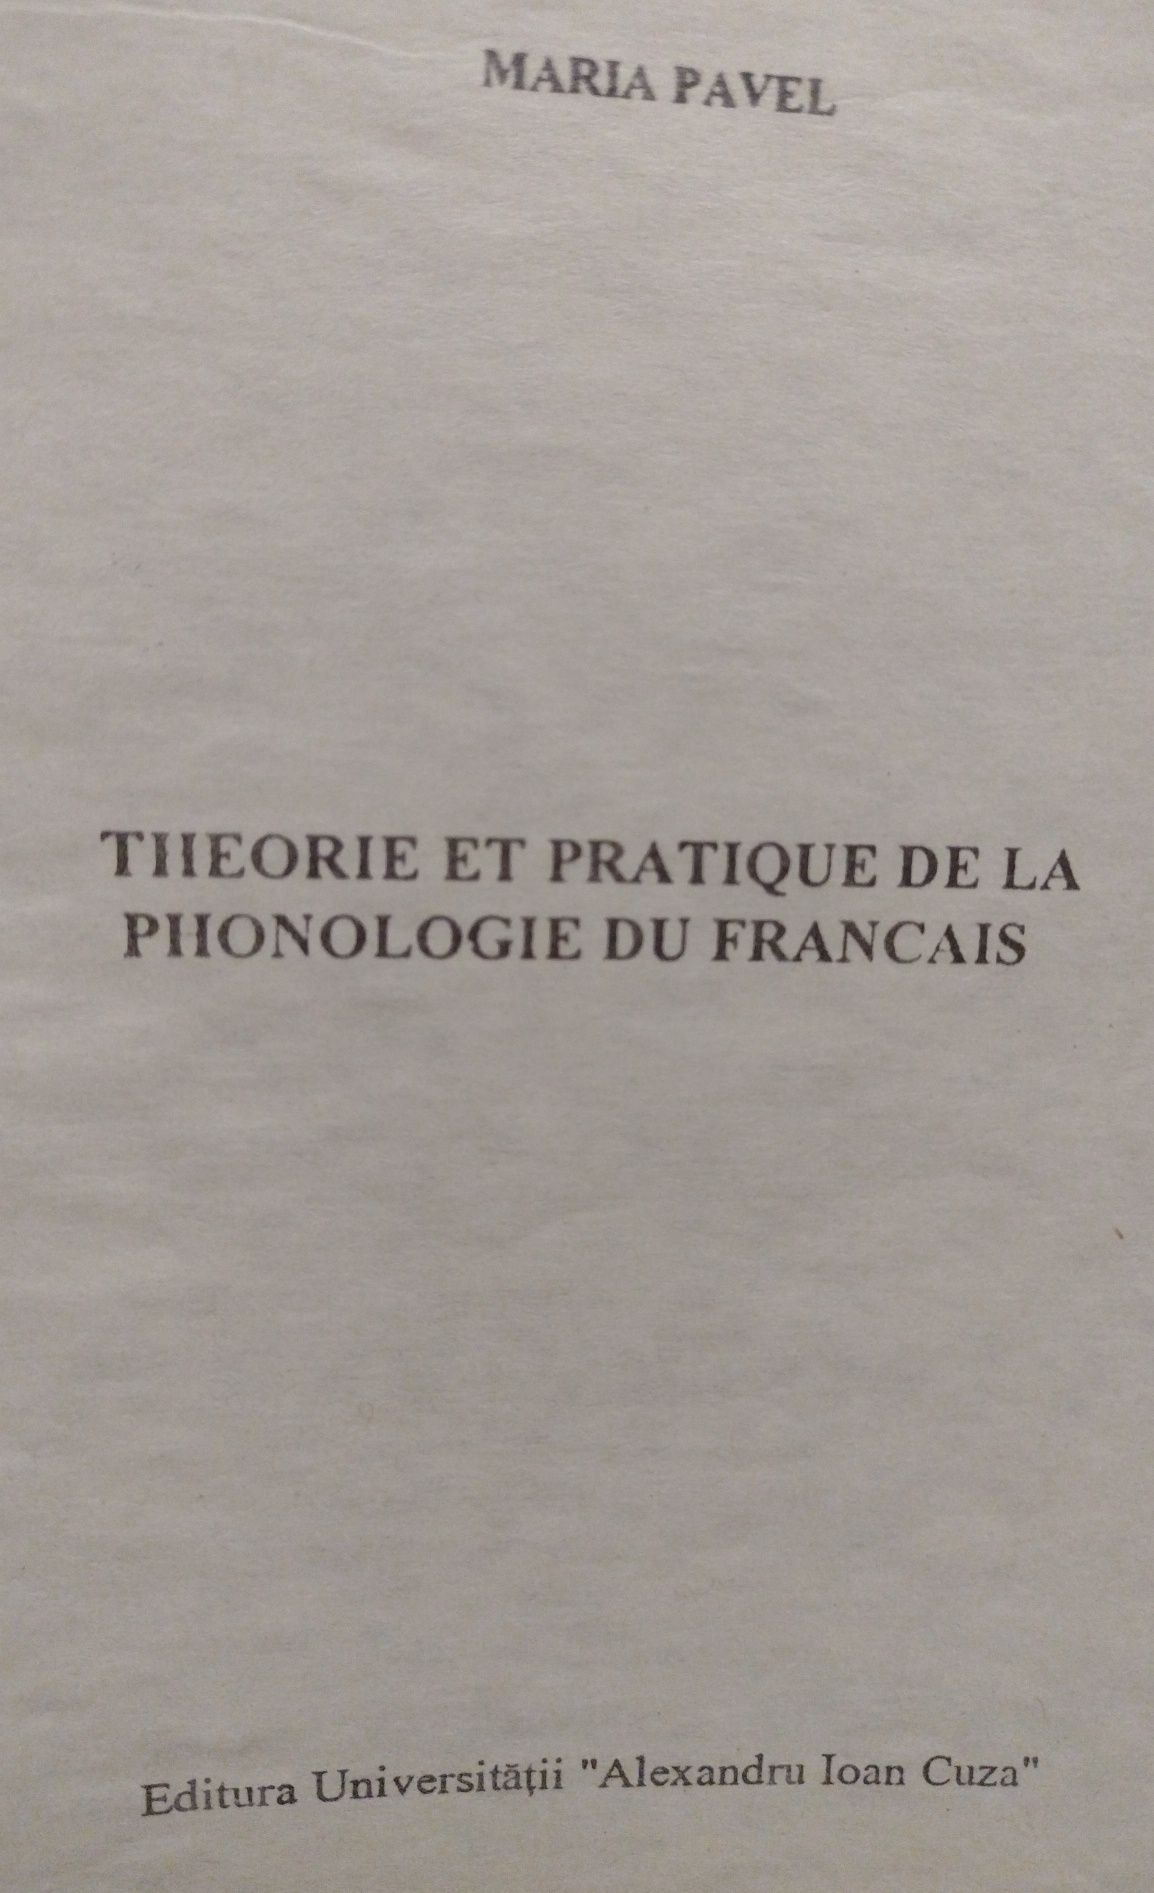 Théorie et pratique de la Phonologie du français, Maria Pavel